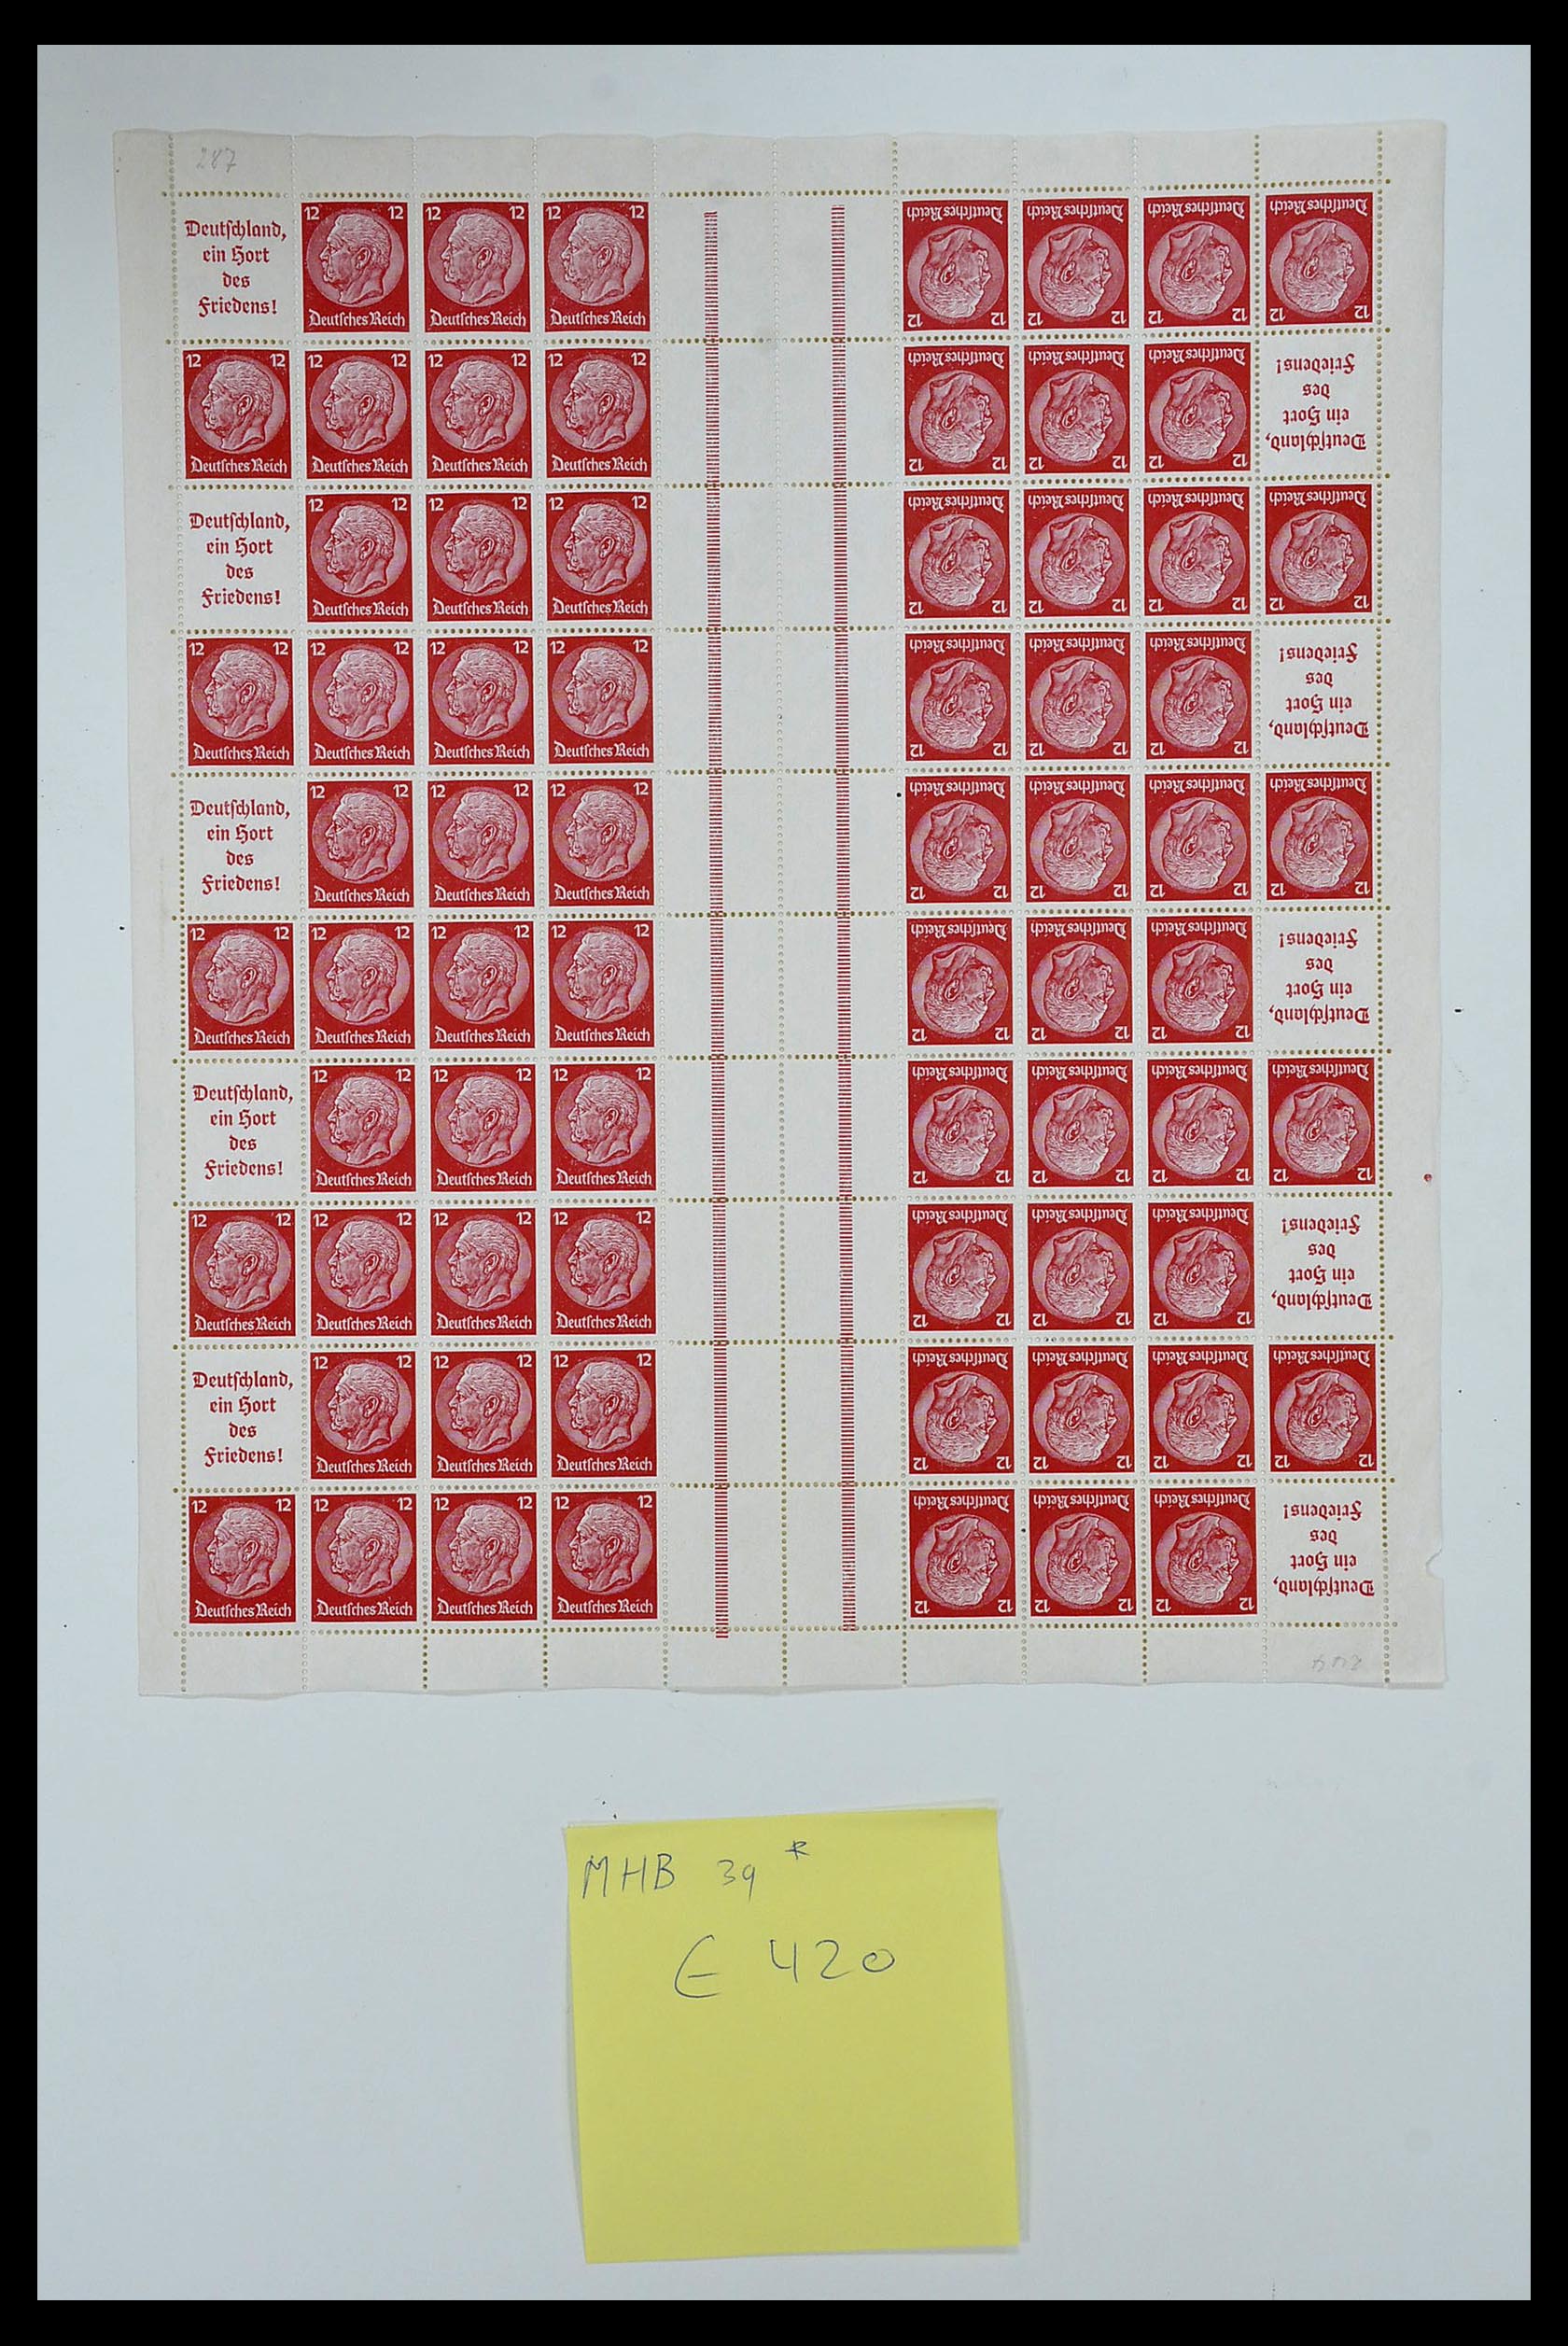 35075 017 - Stamp Collection 35075 German Reich Markenheftchenbogen 1933-1941.